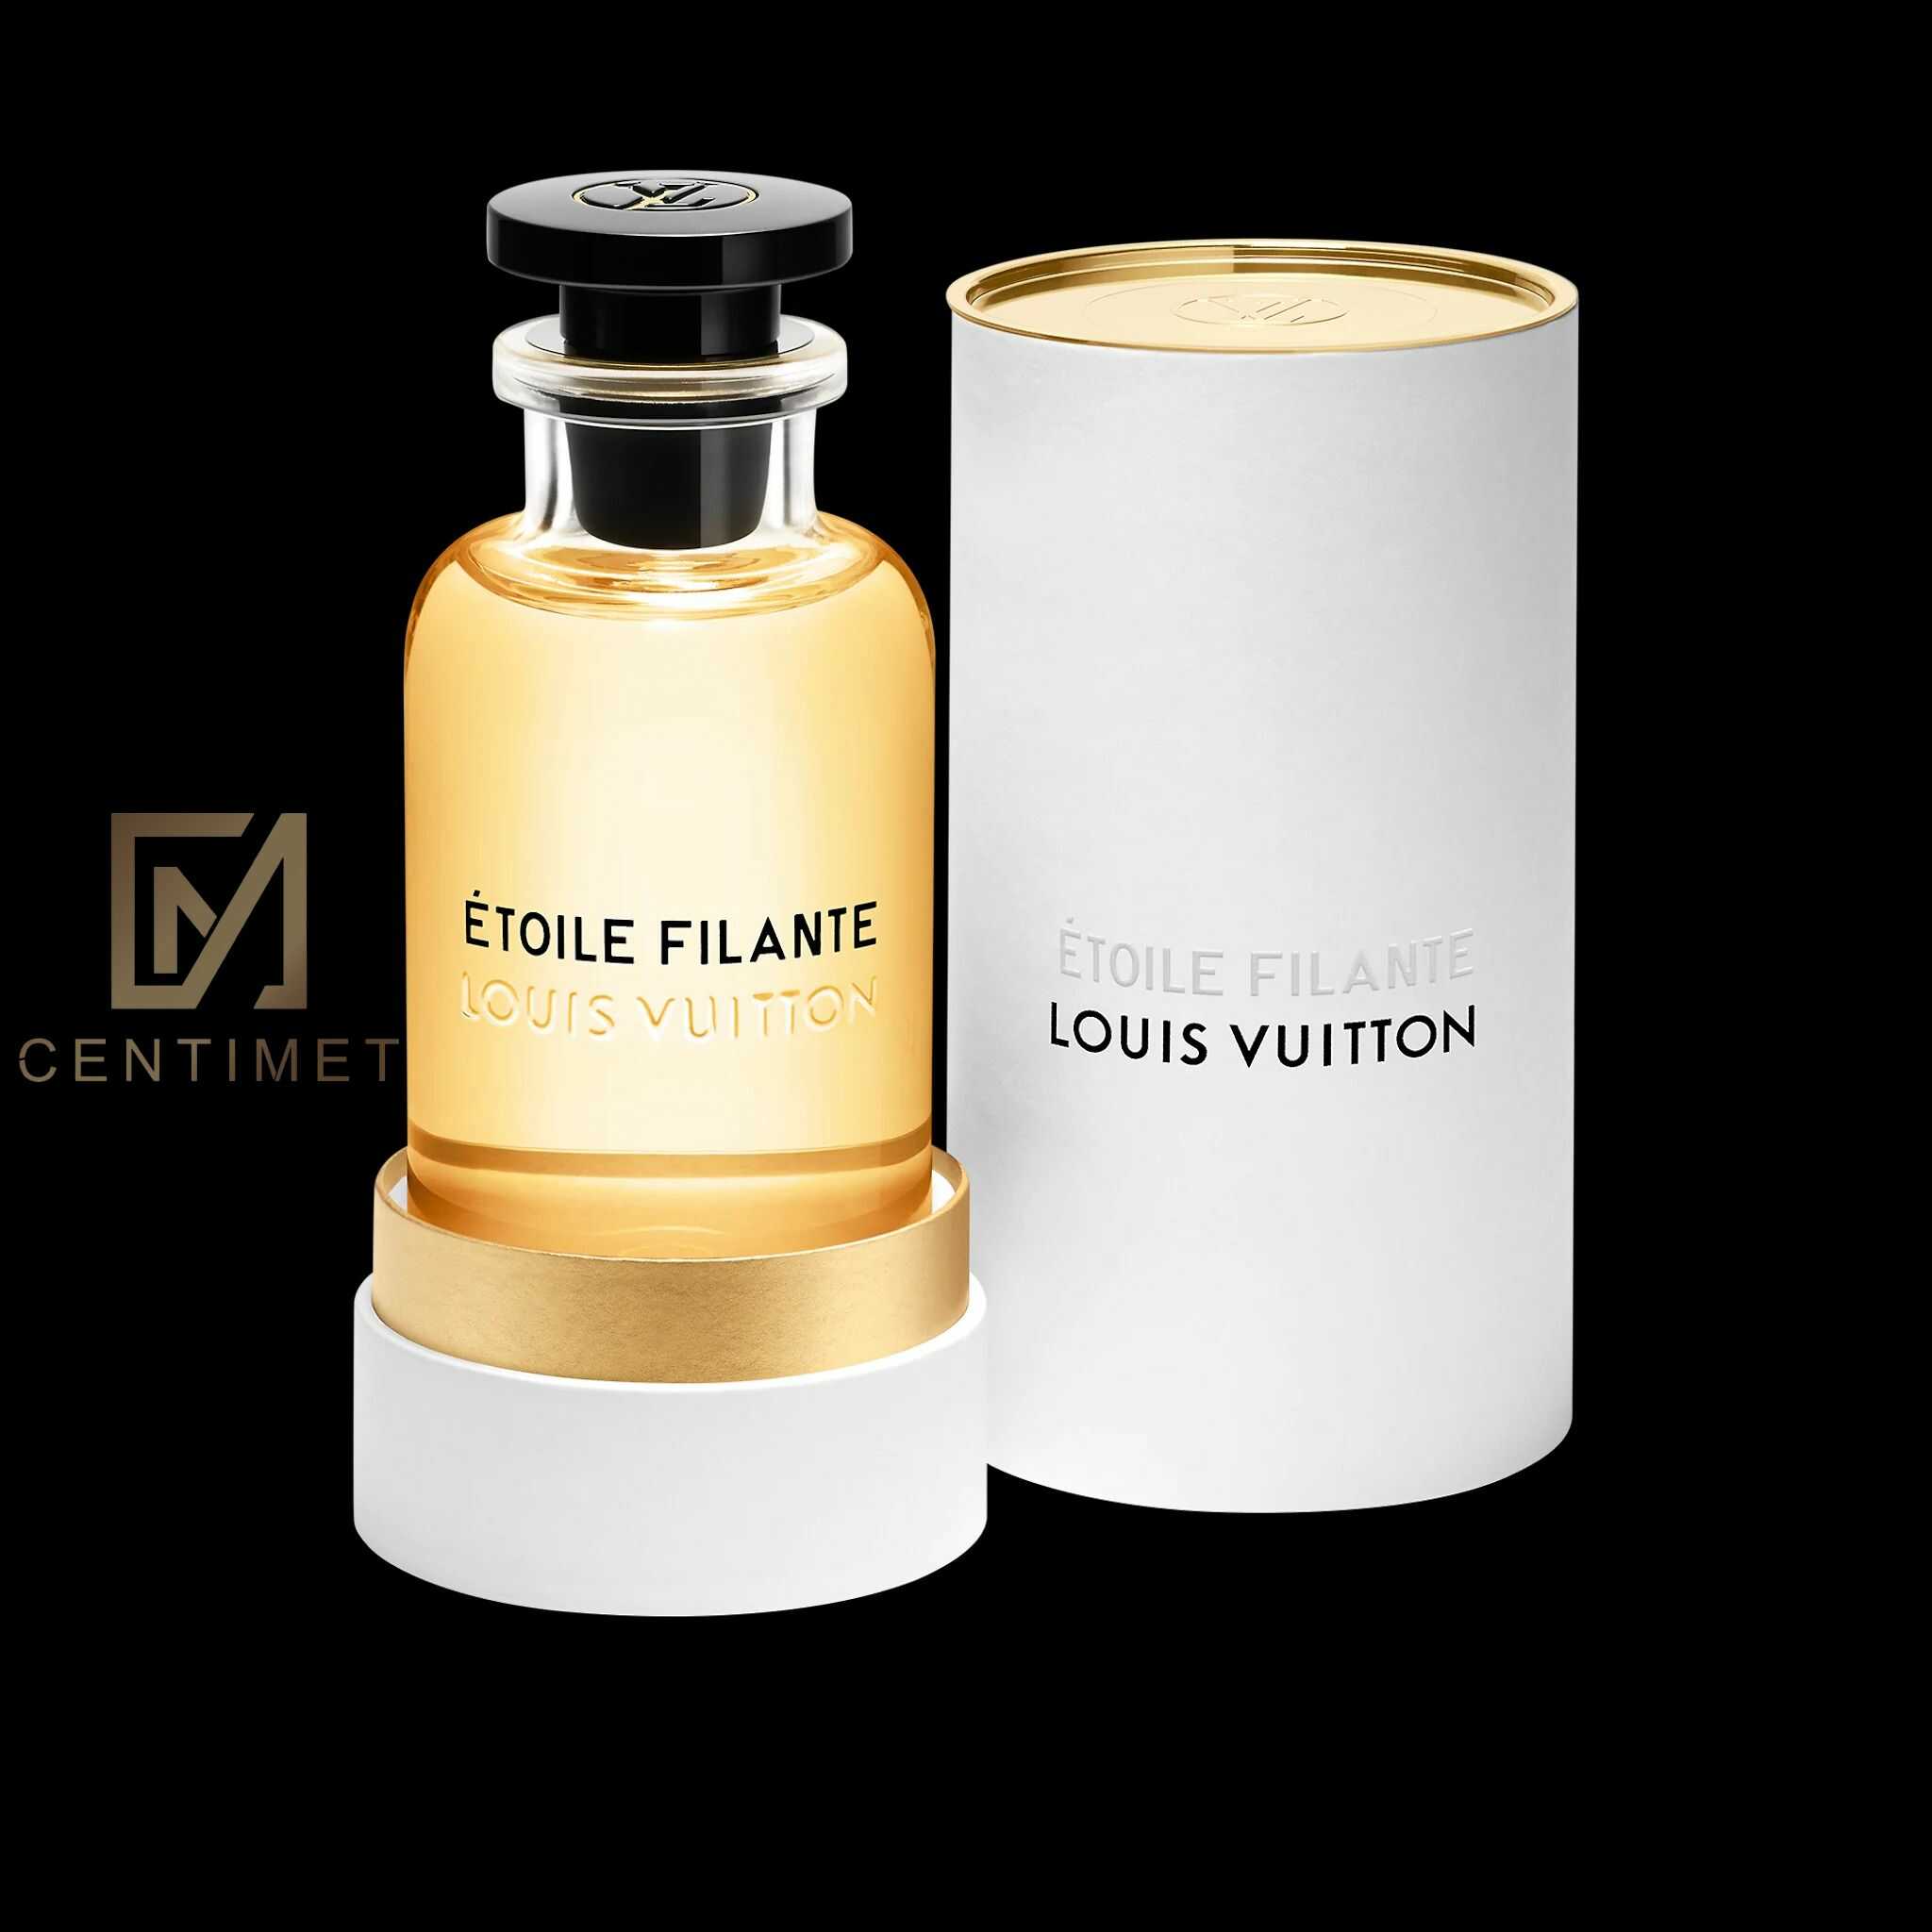 Nước hoa Louis Vuitton - hương nước hoa sang trọng nhất trên thế giới | IVY  moda